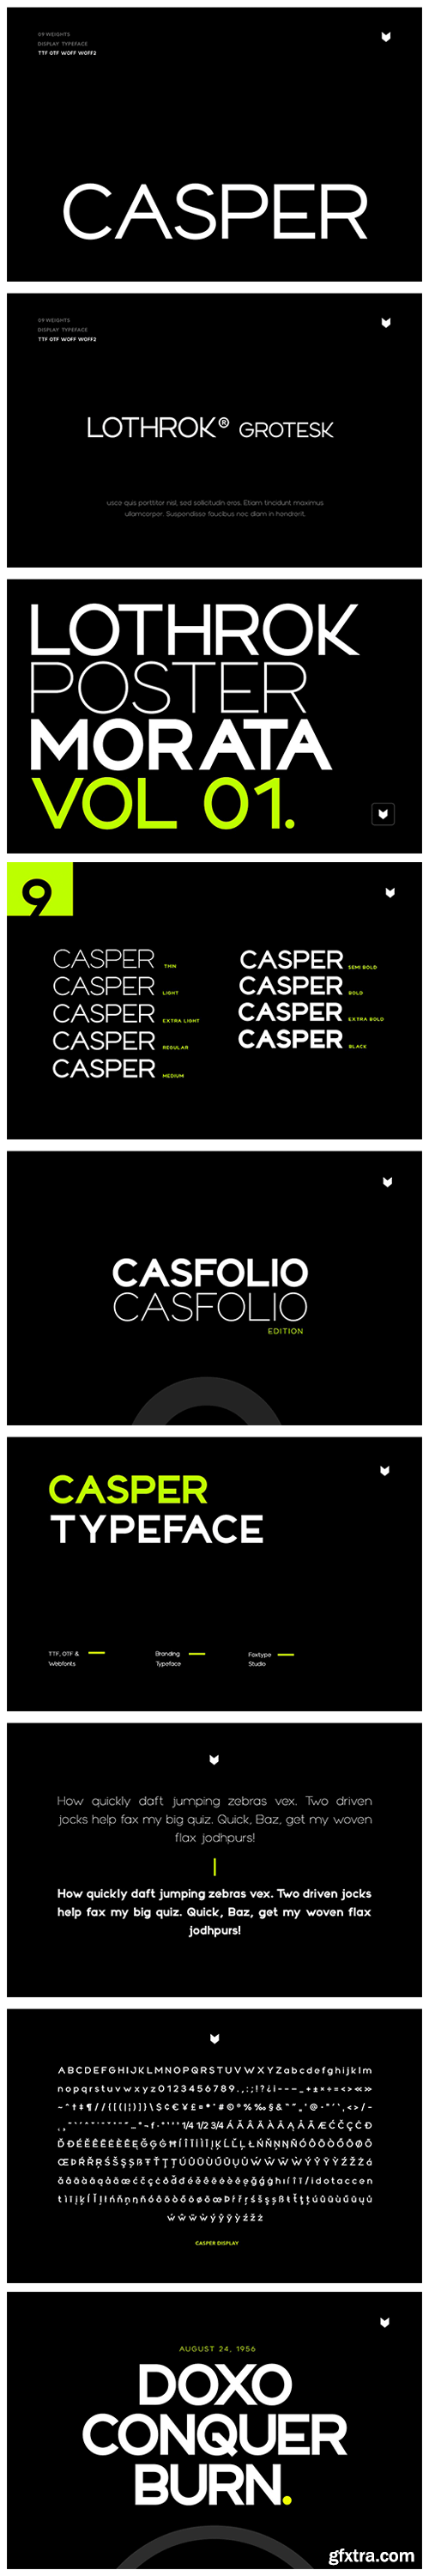 CM - Casper Typeface 6656352